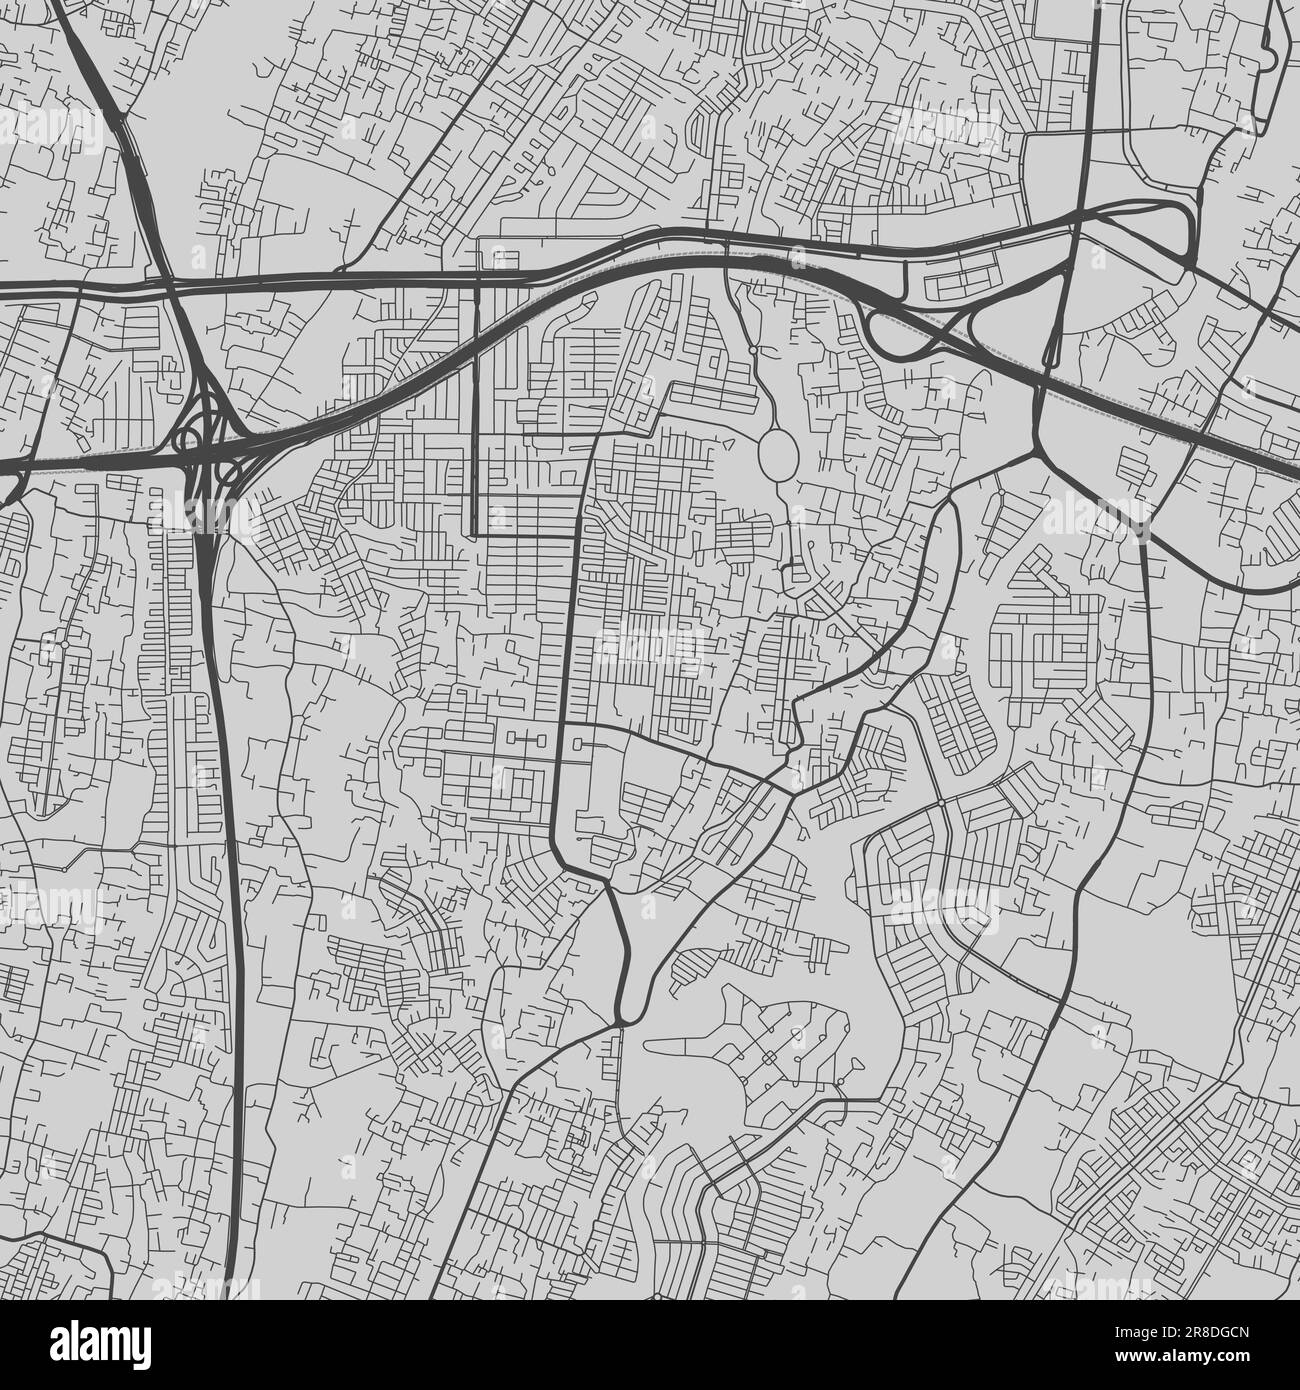 Mappa della città di Bekasi. Poster in bianco e nero urbano. Immagine della mappa stradale con vista dell'area verticale della città metropolitana. Illustrazione Vettoriale